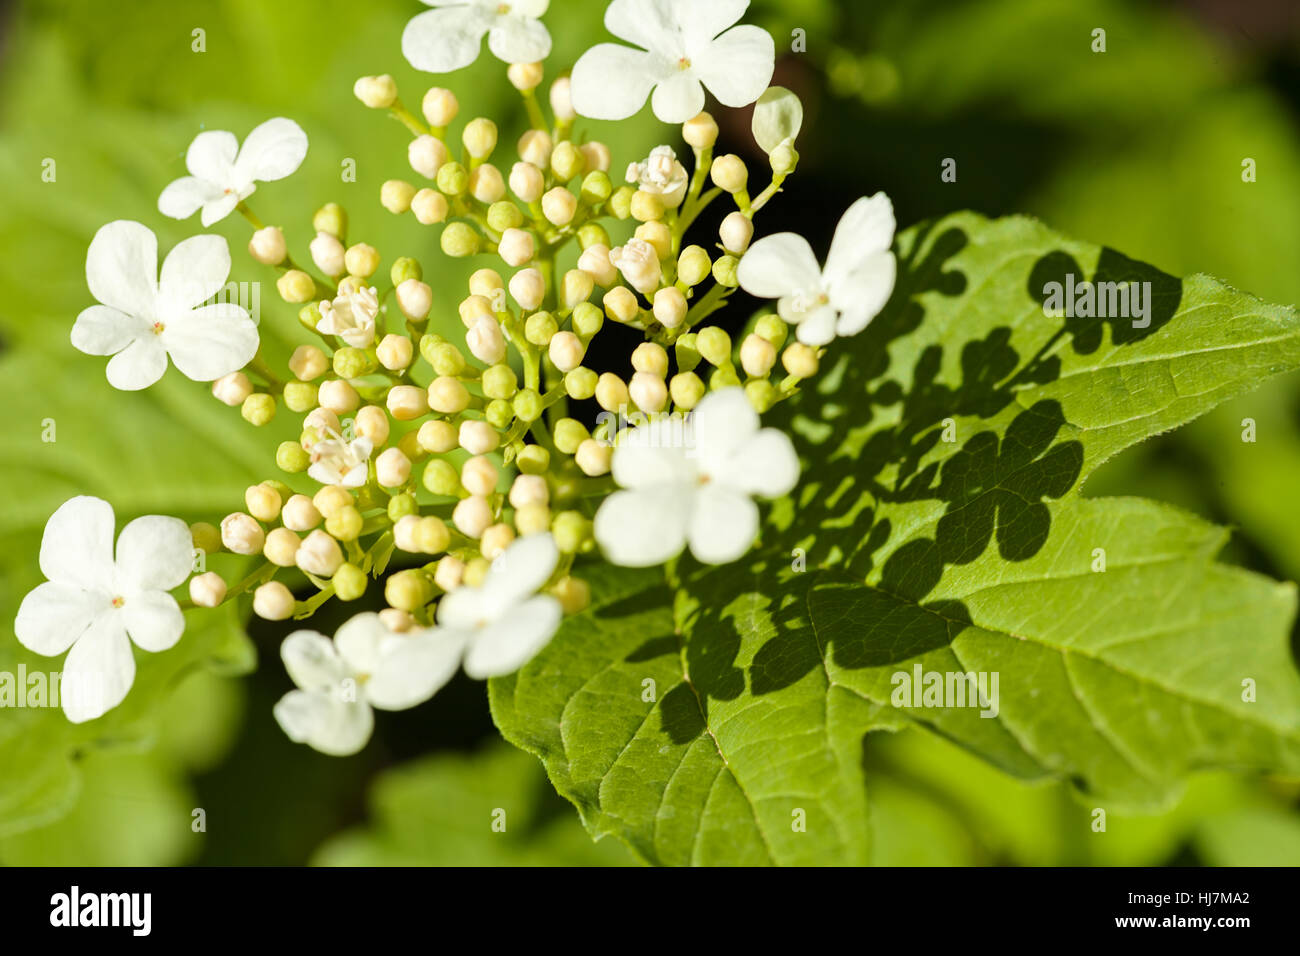 Ziersträucher mit weißen Blumen in voller Blüte, geringe Schärfentiefe Hinweis Stockfoto